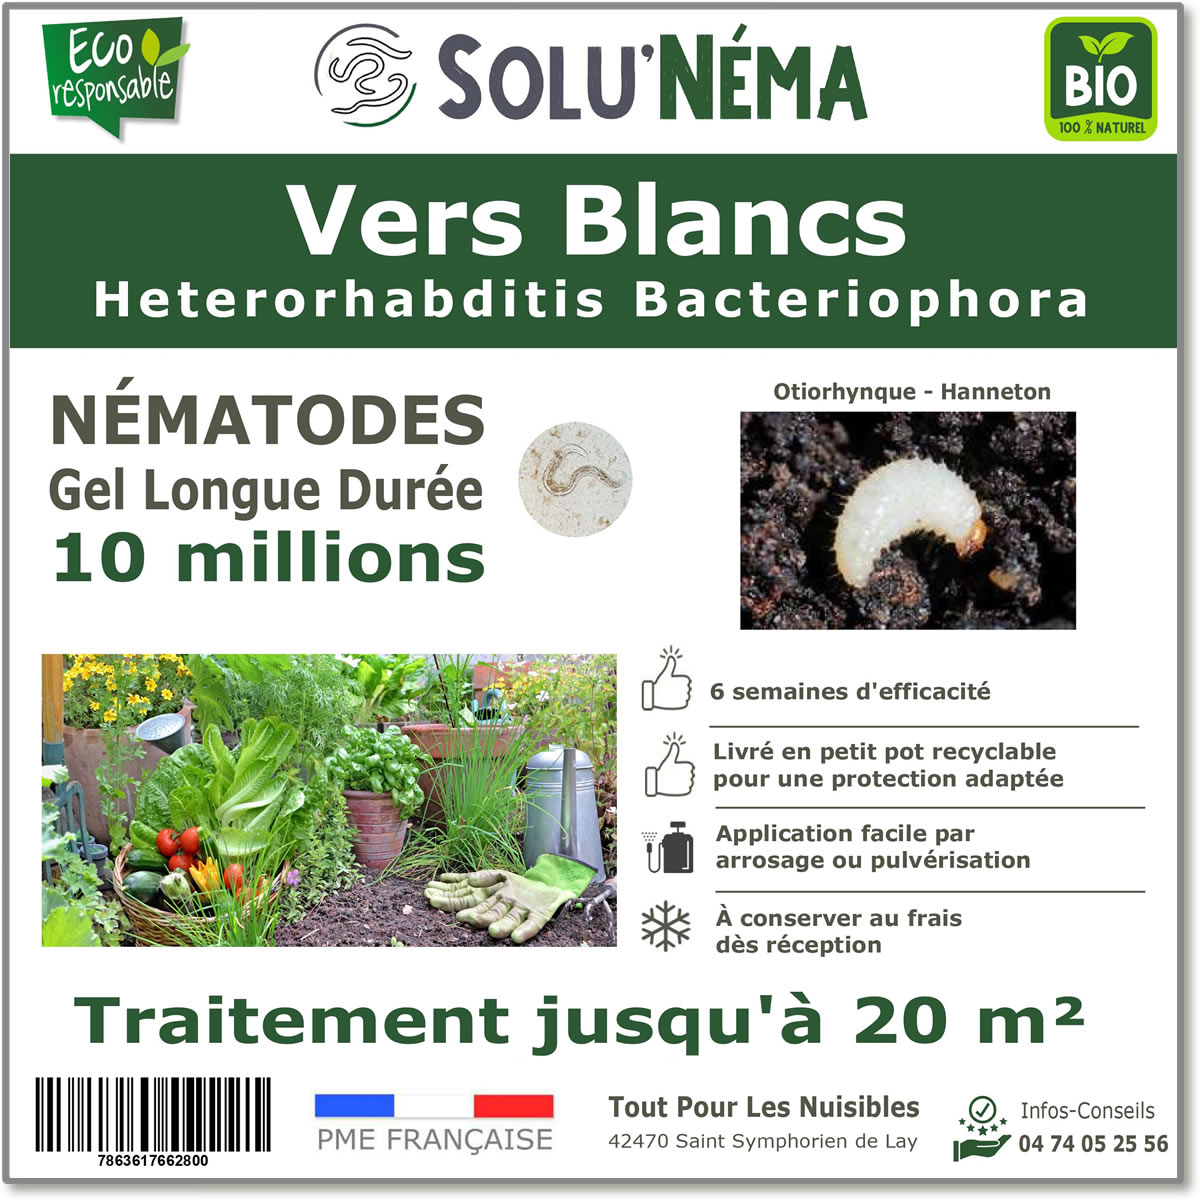 Nématodes (HB) Solunema pour Les vers blancx - otiorhinque - hanneton 10 millions SF